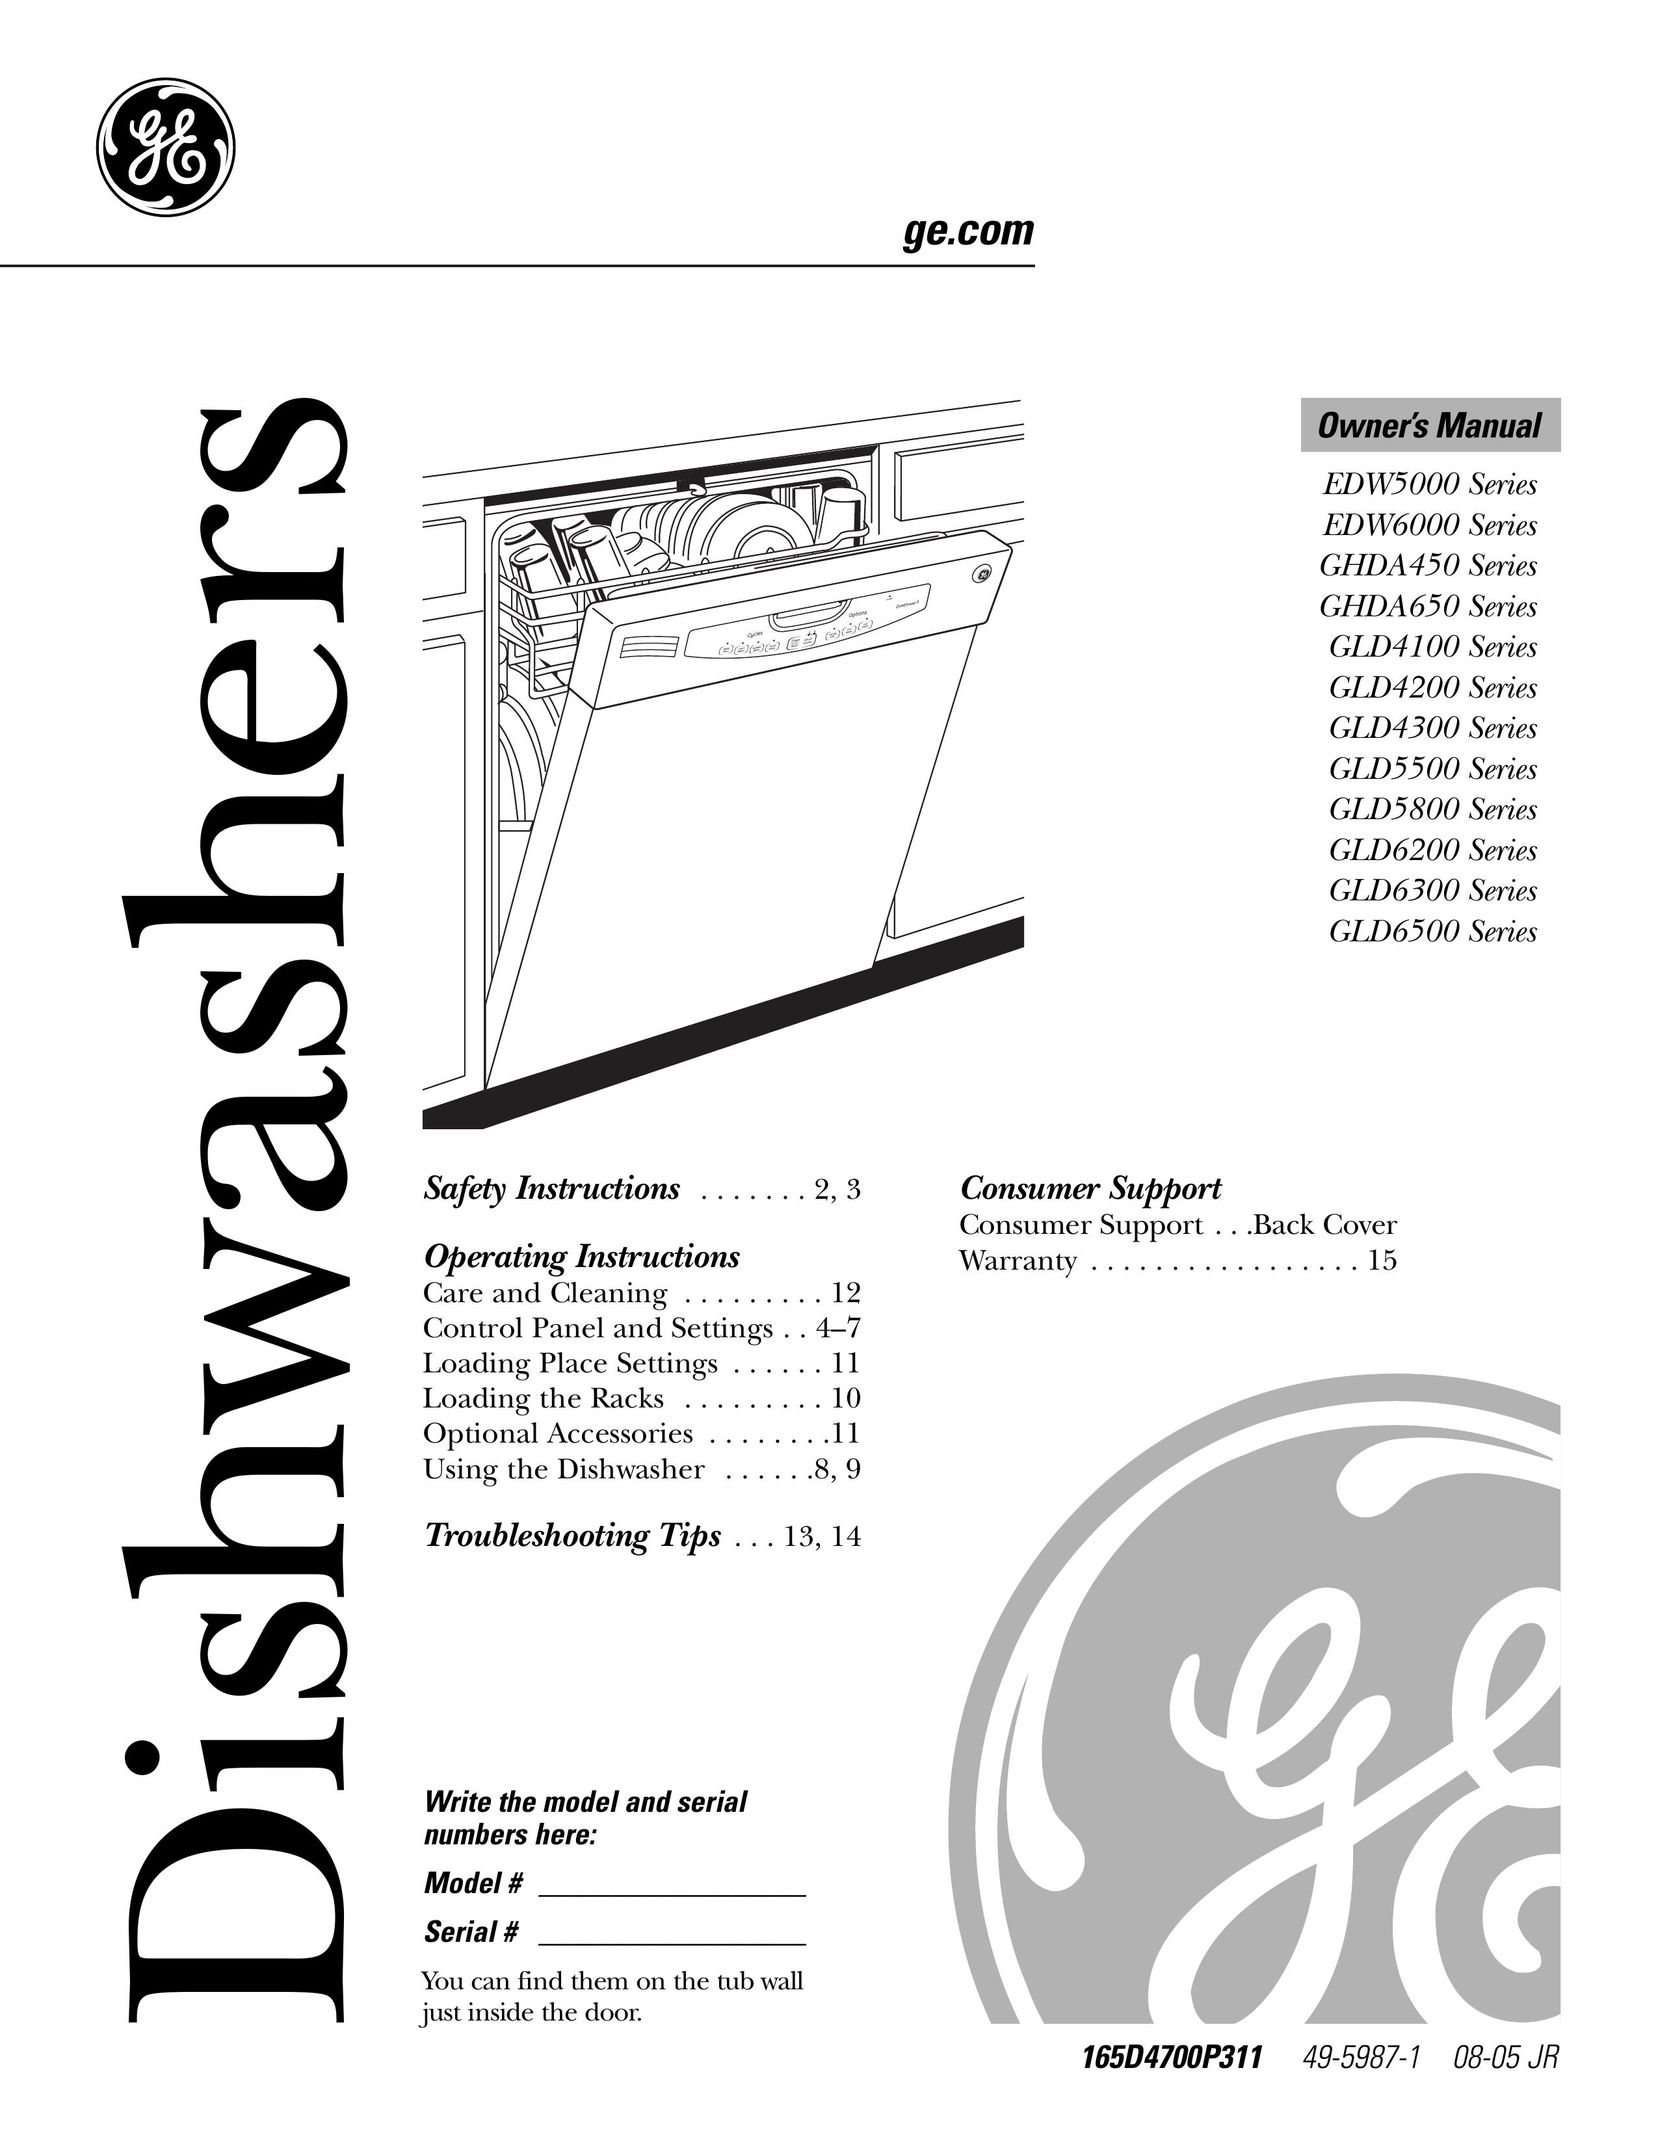 GE Monogram GLD4100 Dishwasher User Manual